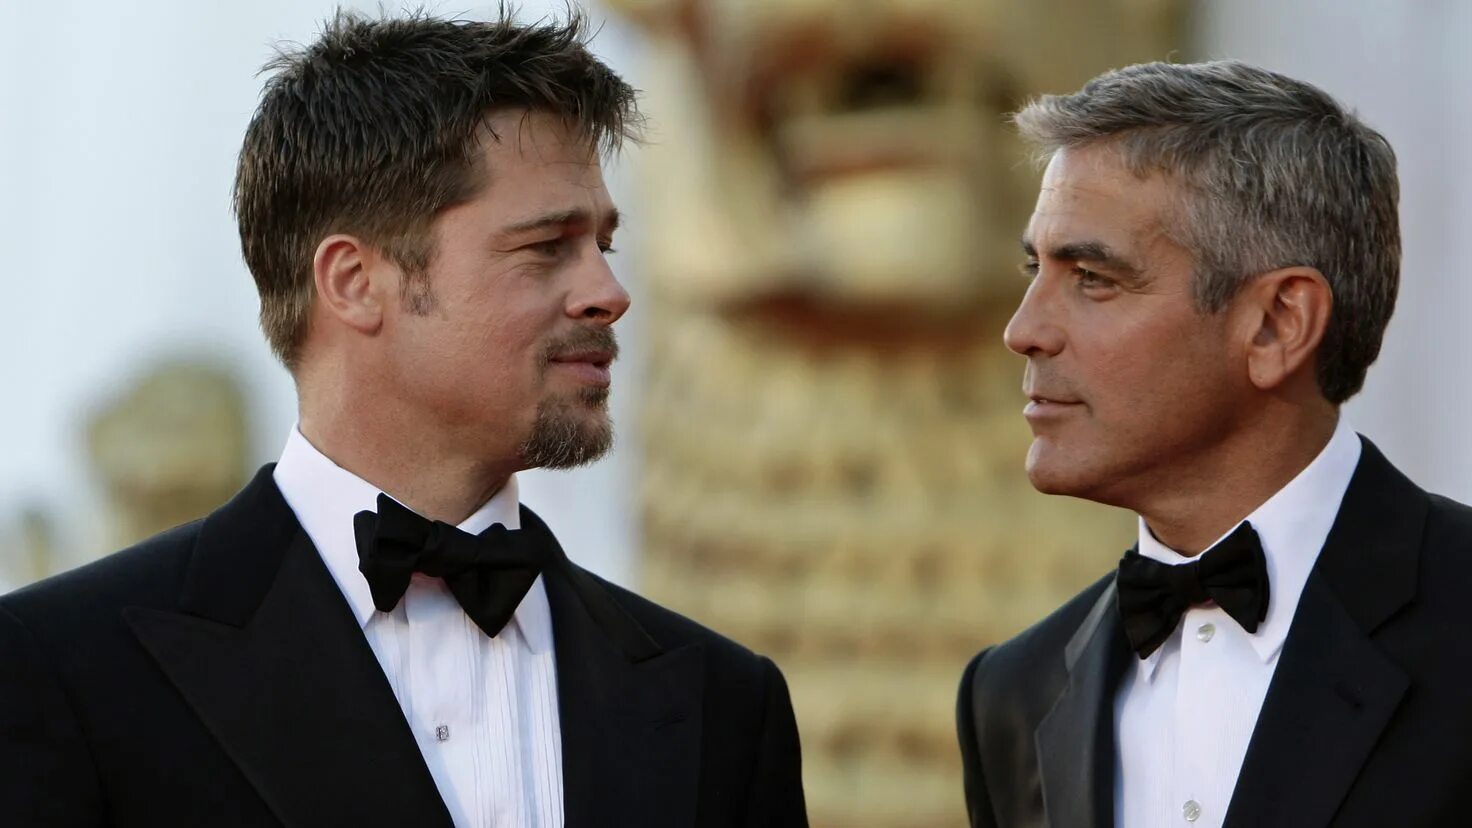 Джордж Клуни и Брэд Питт. Джордж Клуни и Брэд Питт фото. 10. Брэд Питт 9. Джордж Клуни. Брэд Питт друзья Оушена. Клуни питт